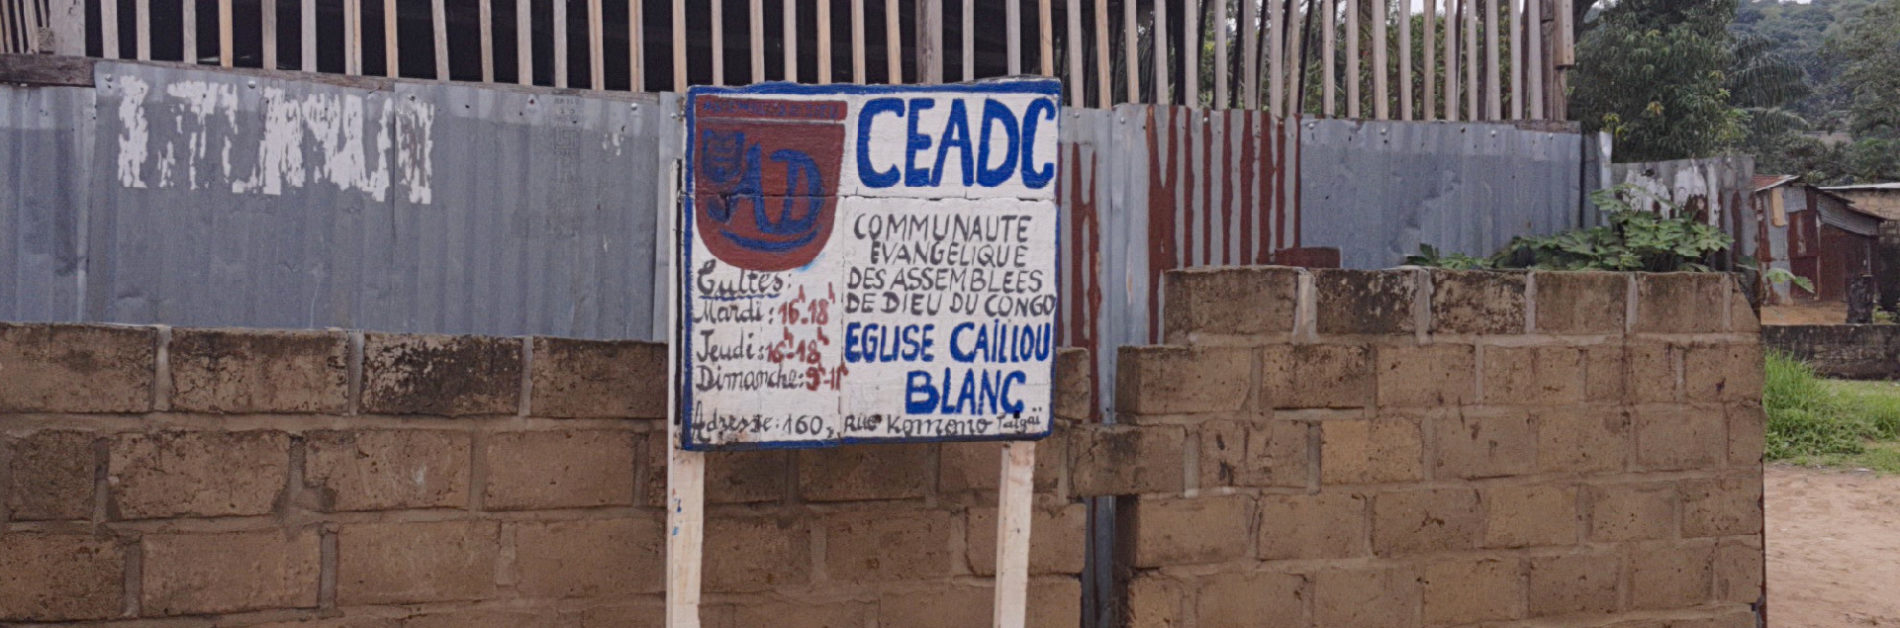 Congo : construire des églises